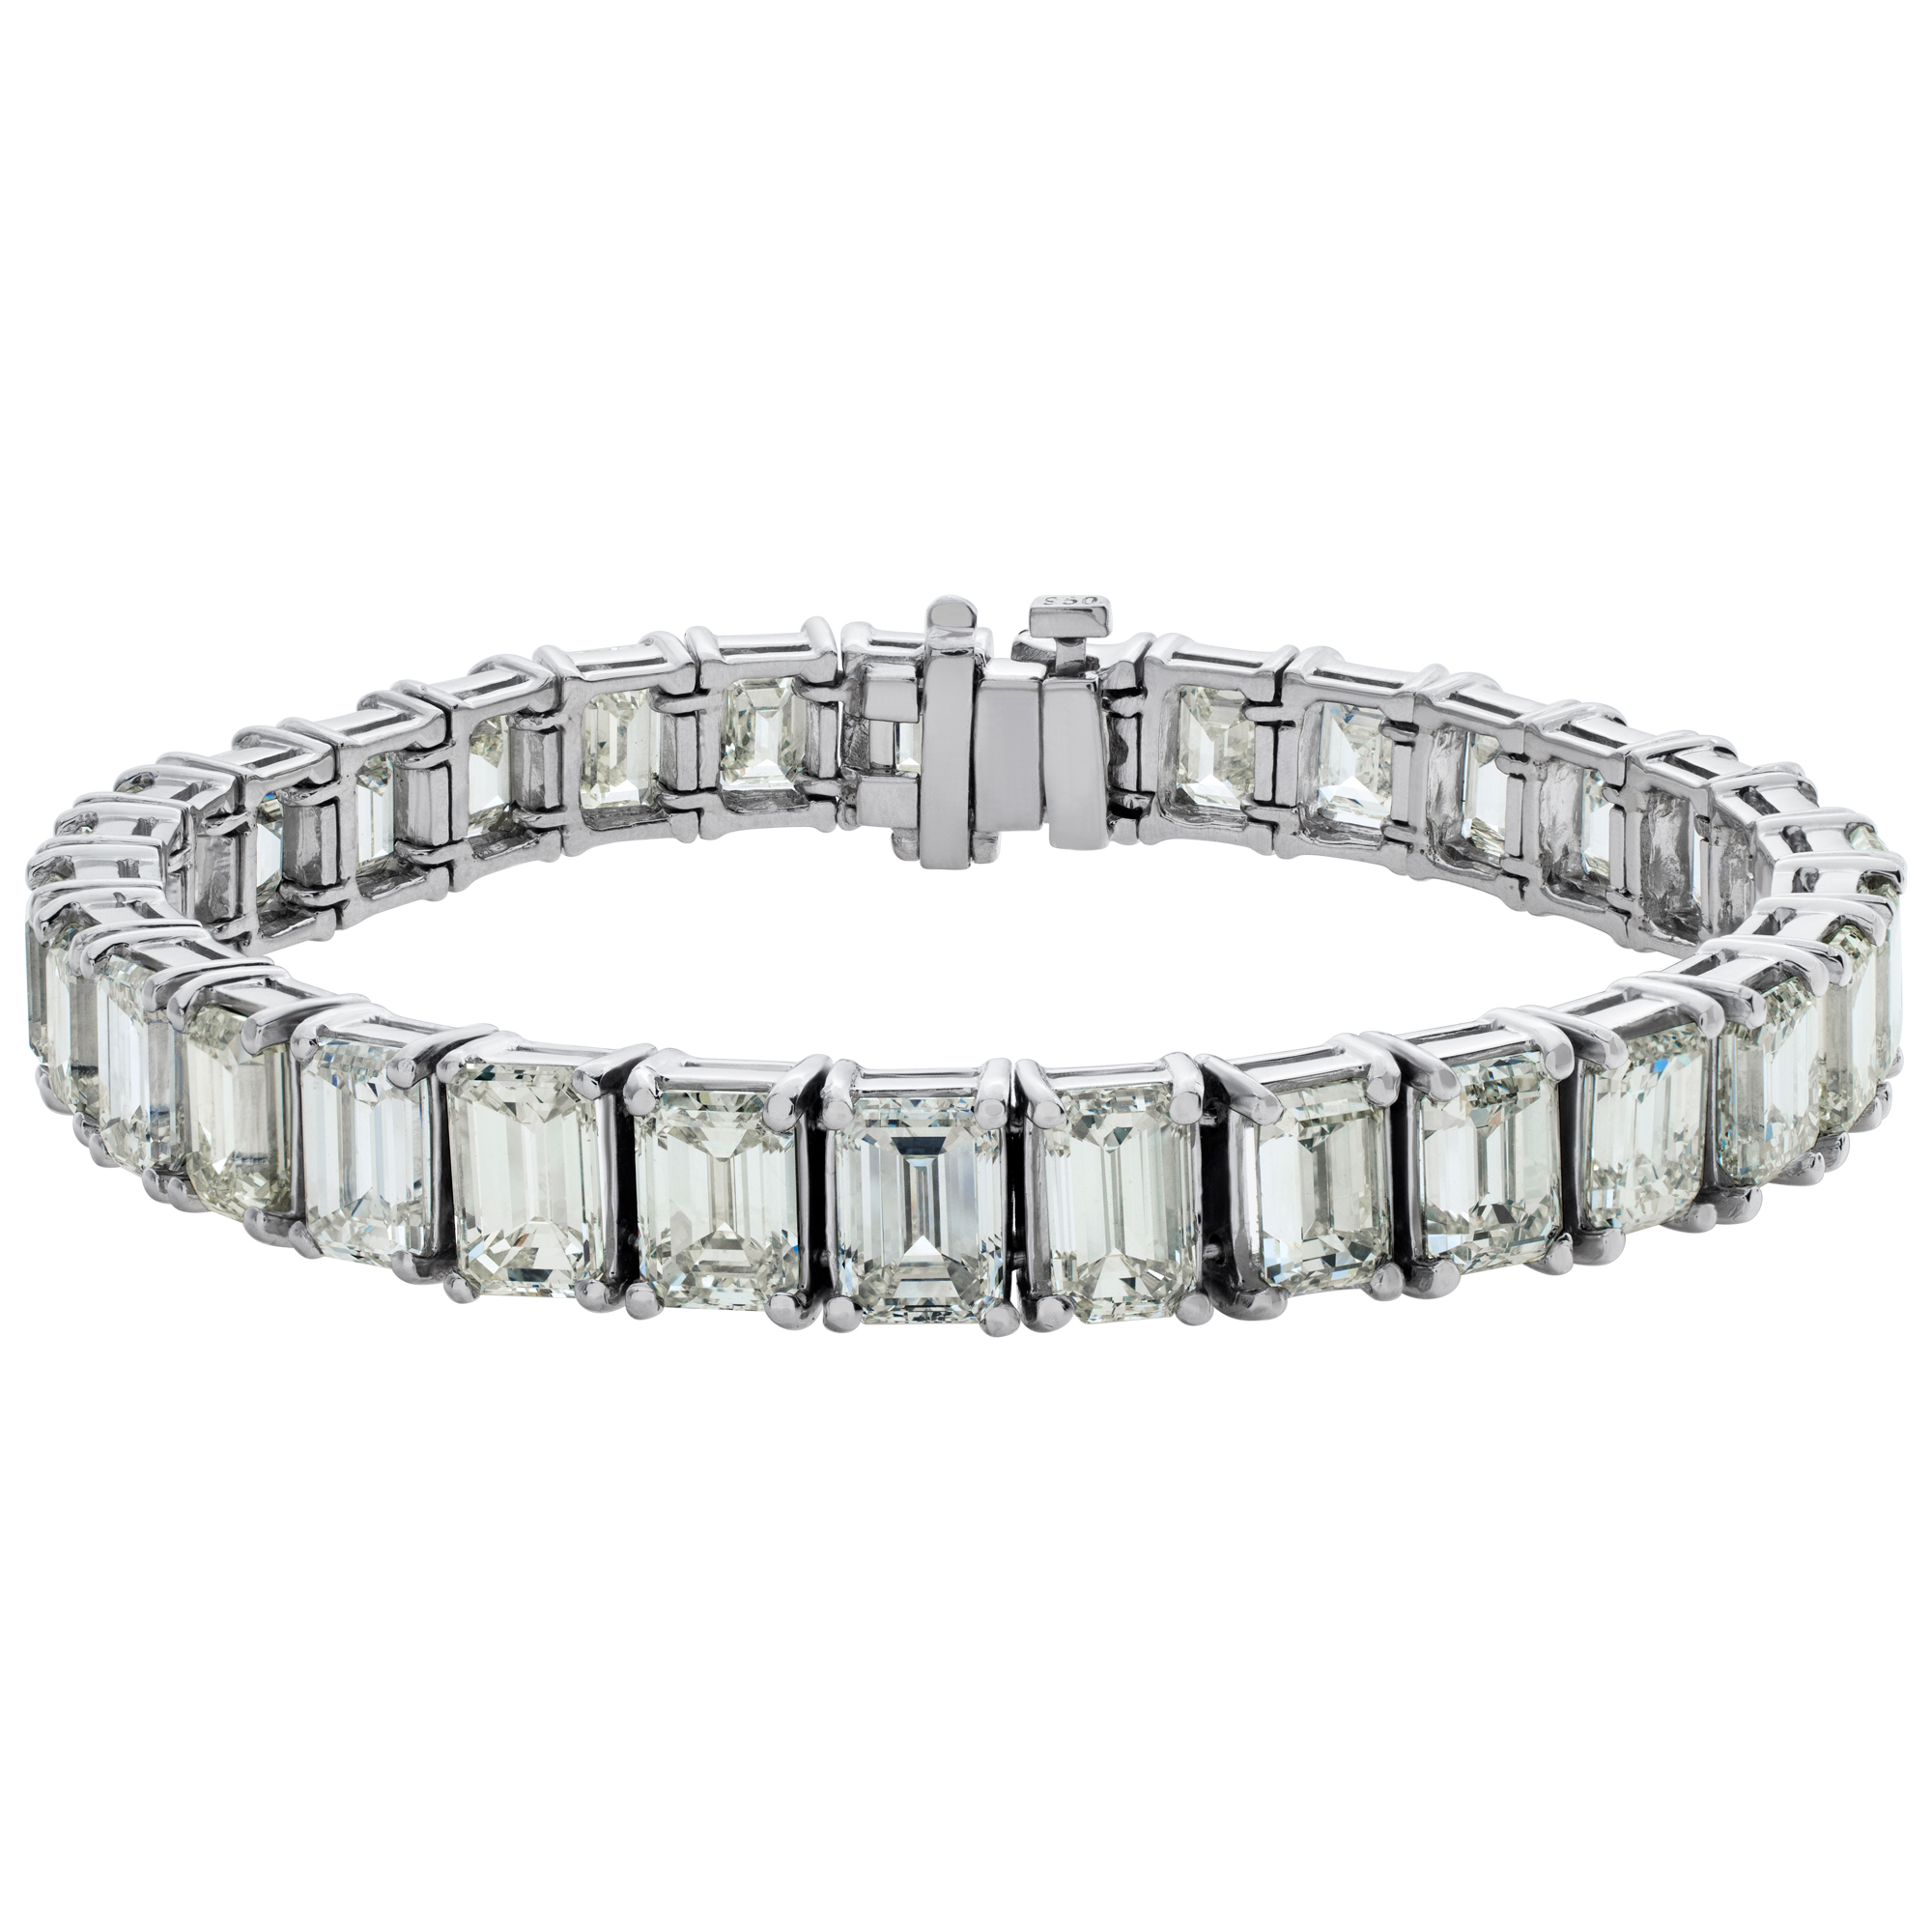 Emerald cut 31 diamond bracelet with 31 diamonds in platinum